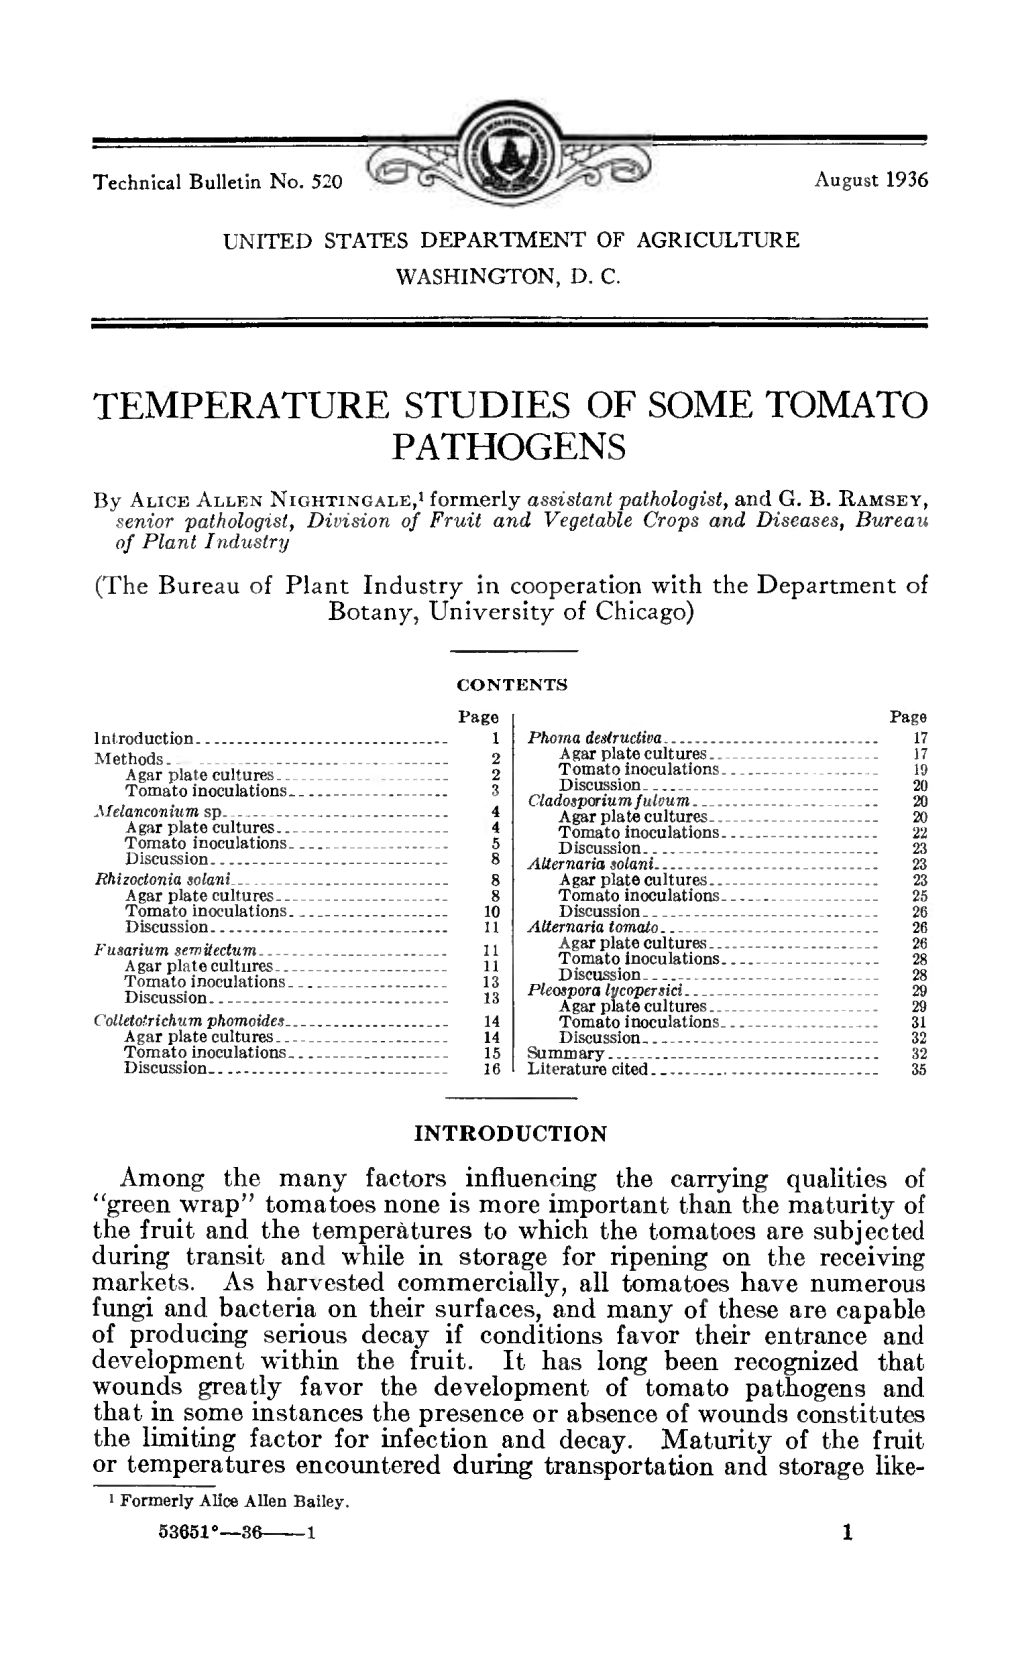 Temperature Studies of Some Tomato Pathogens